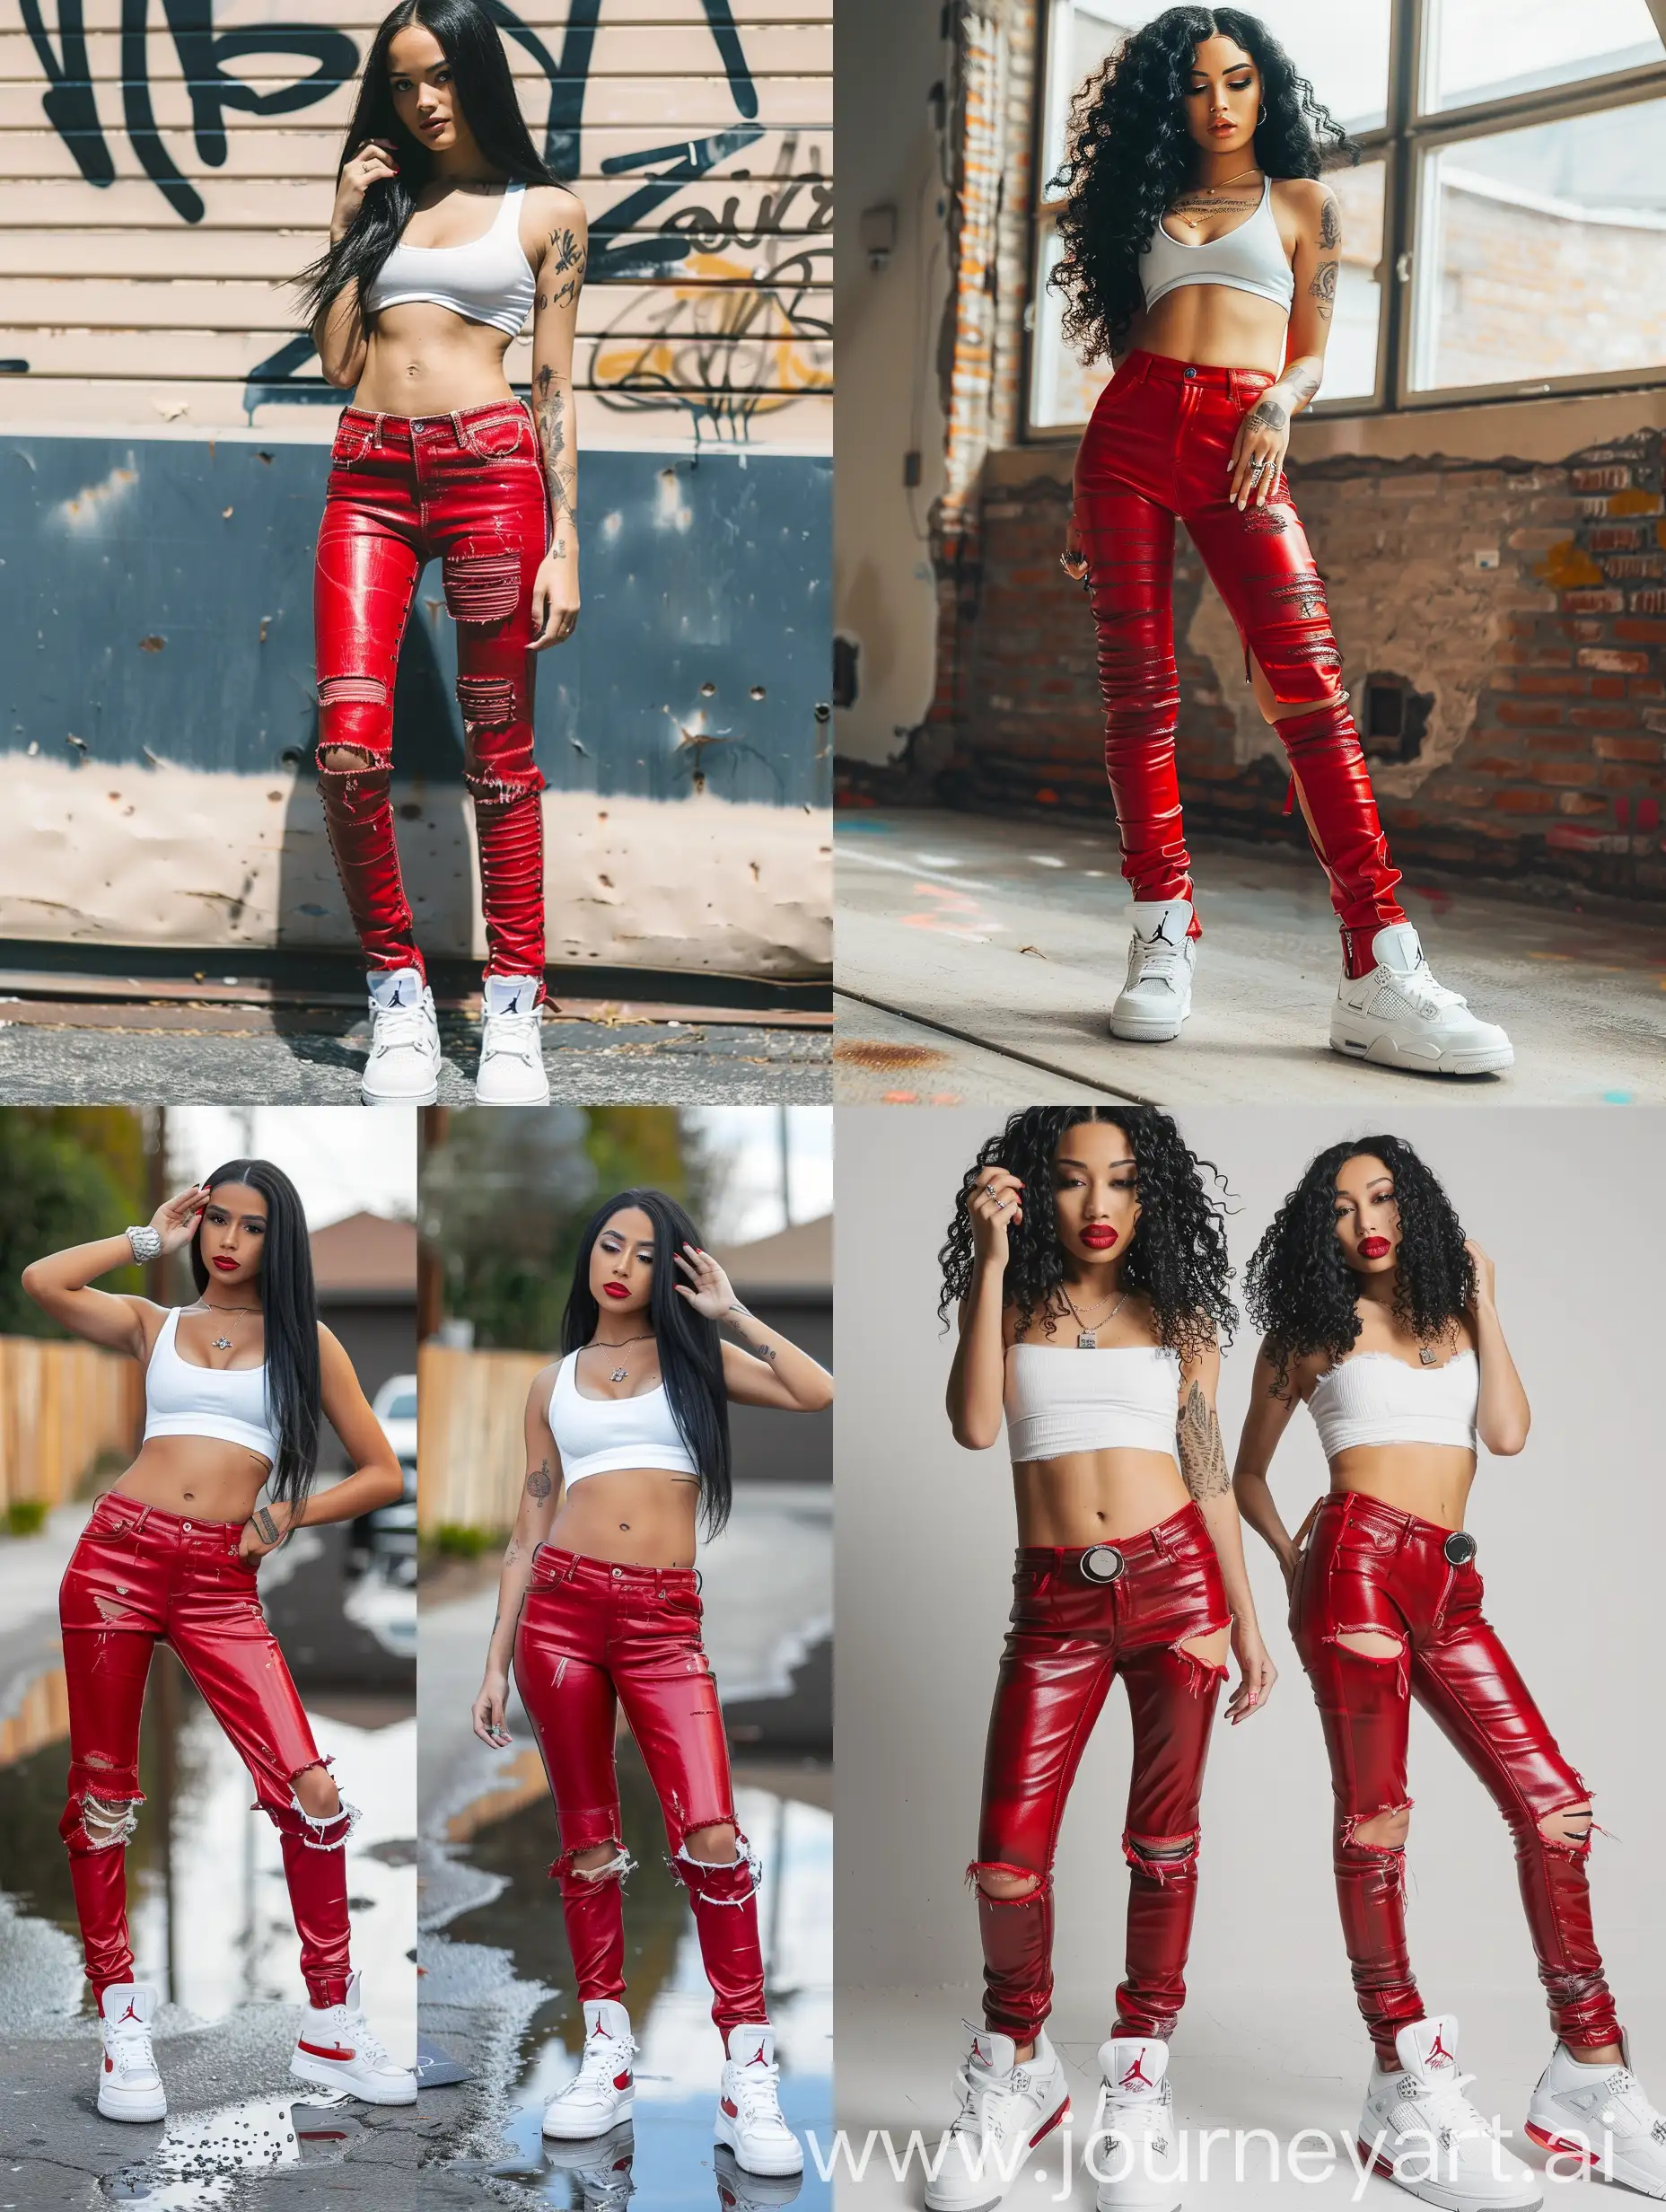 Melimtx model instagram dame met die body met leather jeans aan in het rood precies zelfde uiterlijk en body en Jordan 4s in wit aan zwarte haren